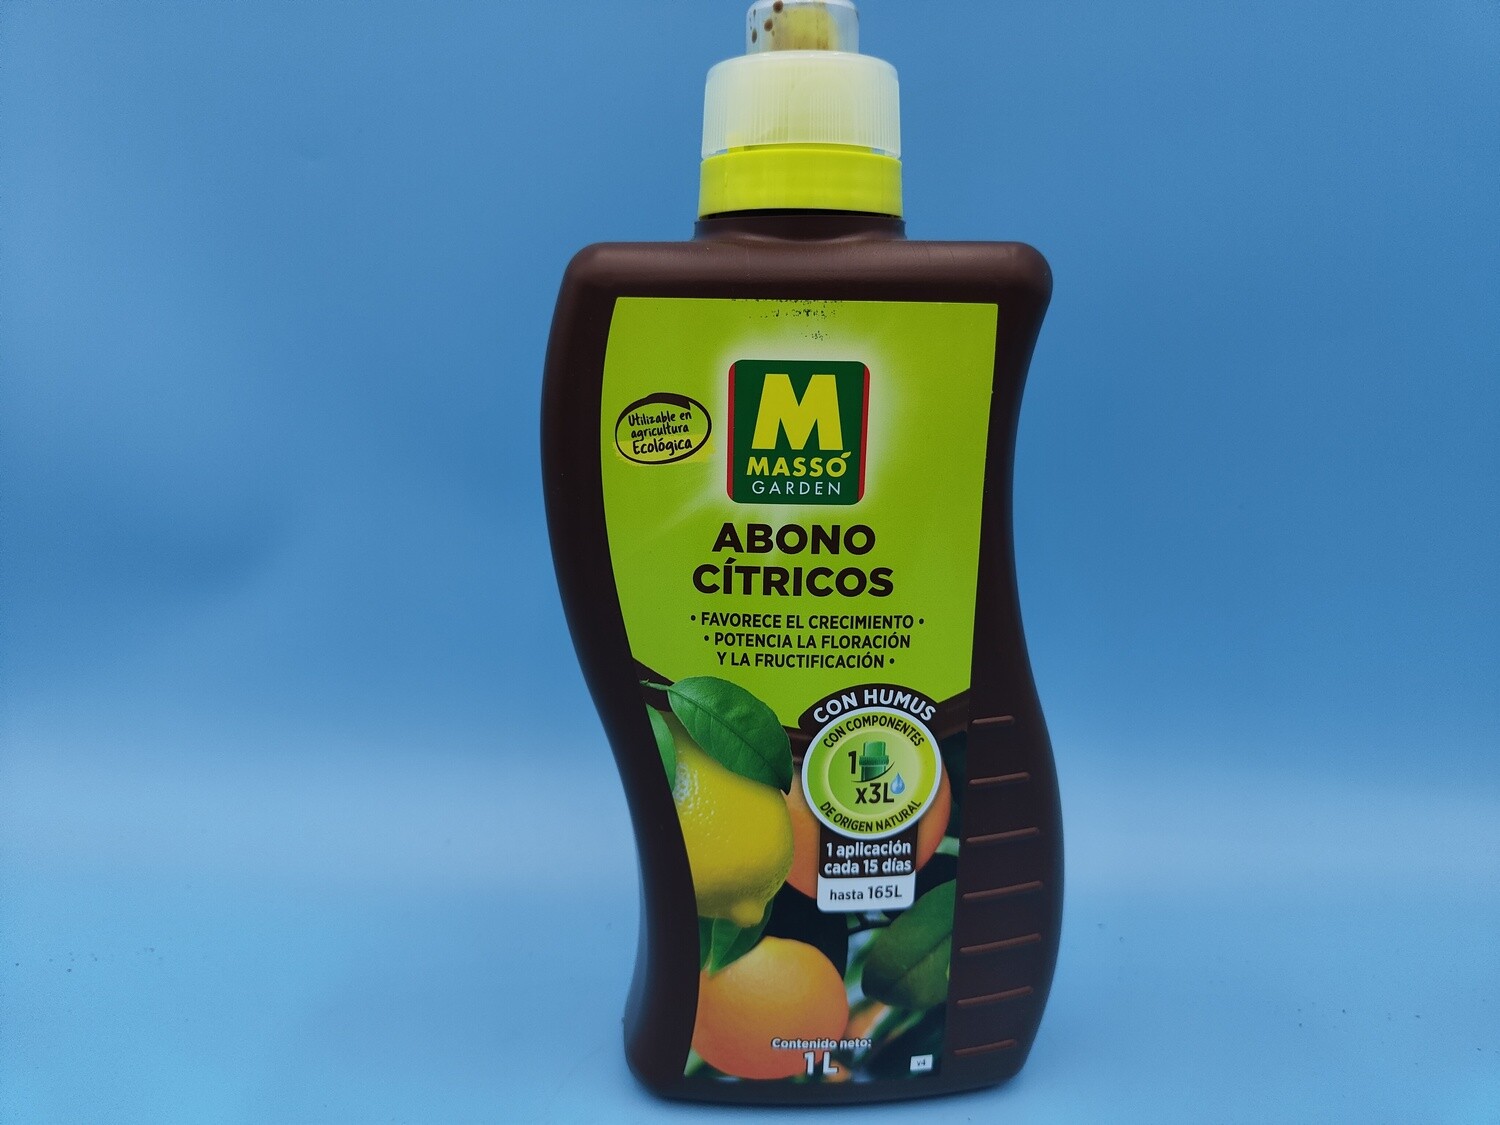 "AmaPlant Abono Citricos" liquido utilizable en agricultura ecologica, favorece el crecimiento, potencia la floracion y la fructificacion, con humus y componentes de origen natural 1 litro